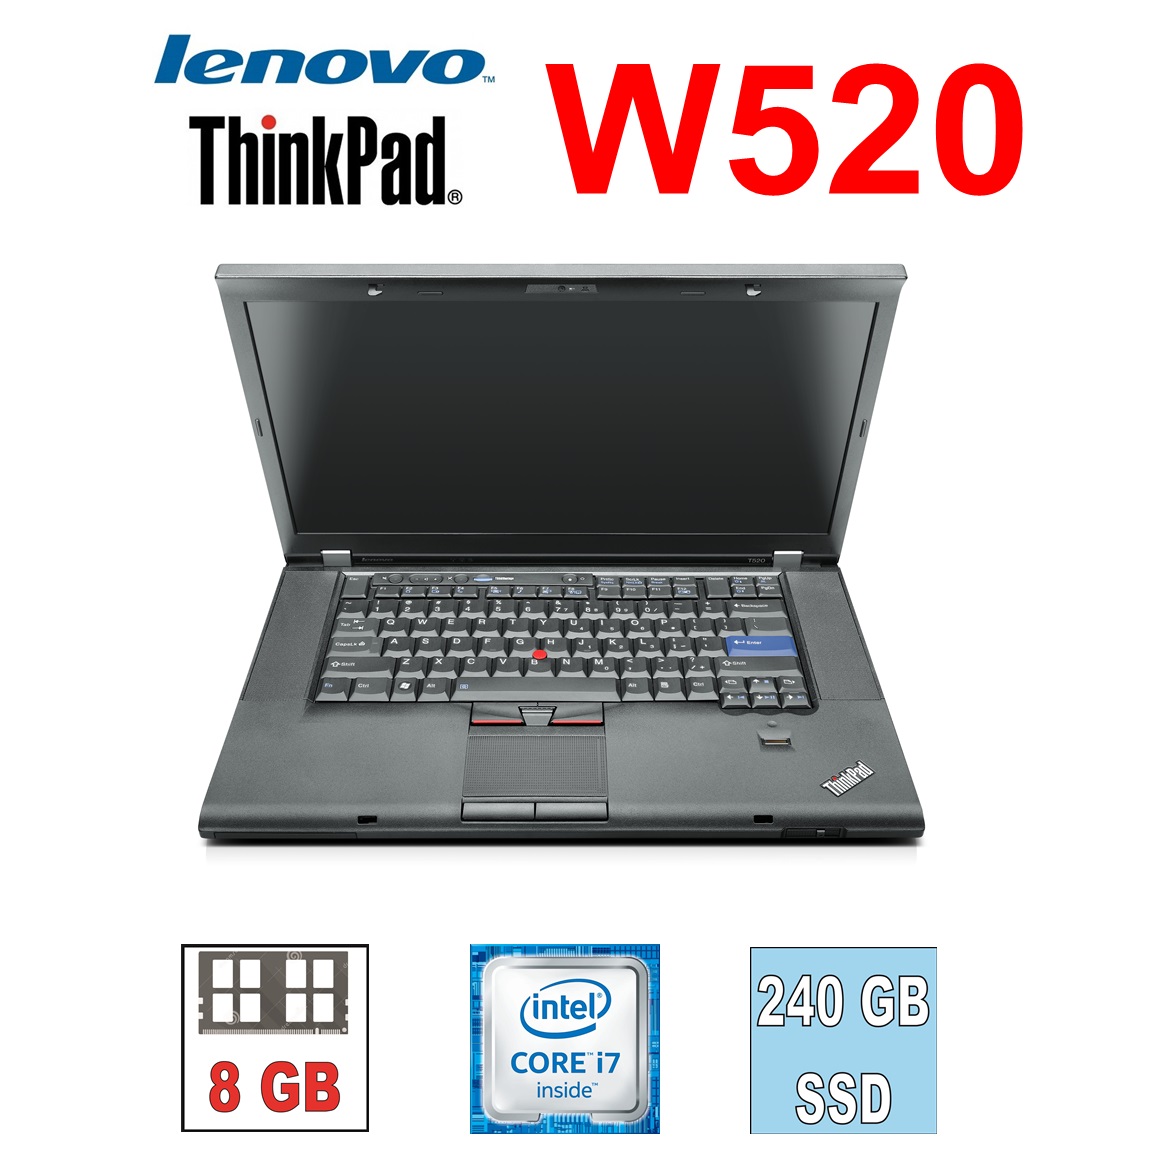 Lenovo ThinkPad W520 i7-2820QM,8GB,240SSD,15.6“